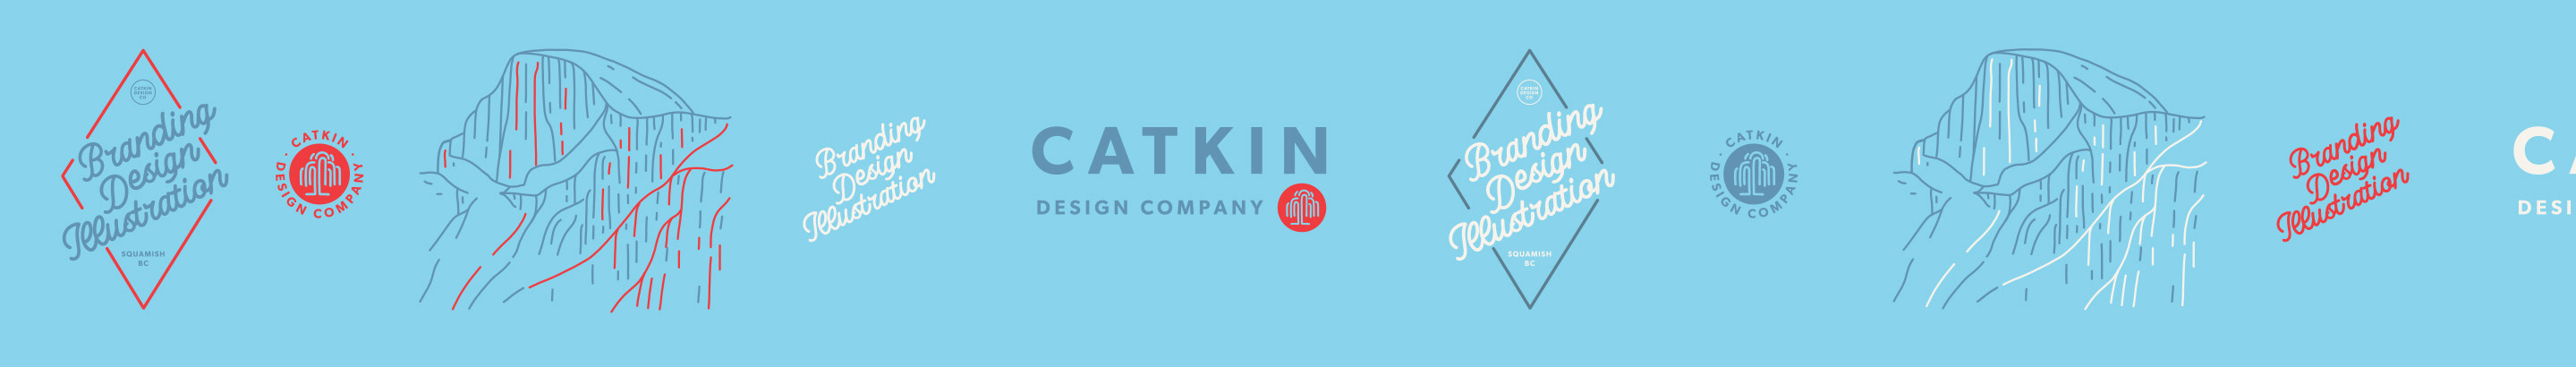 CATKIN DESIGN CO.'s profile banner